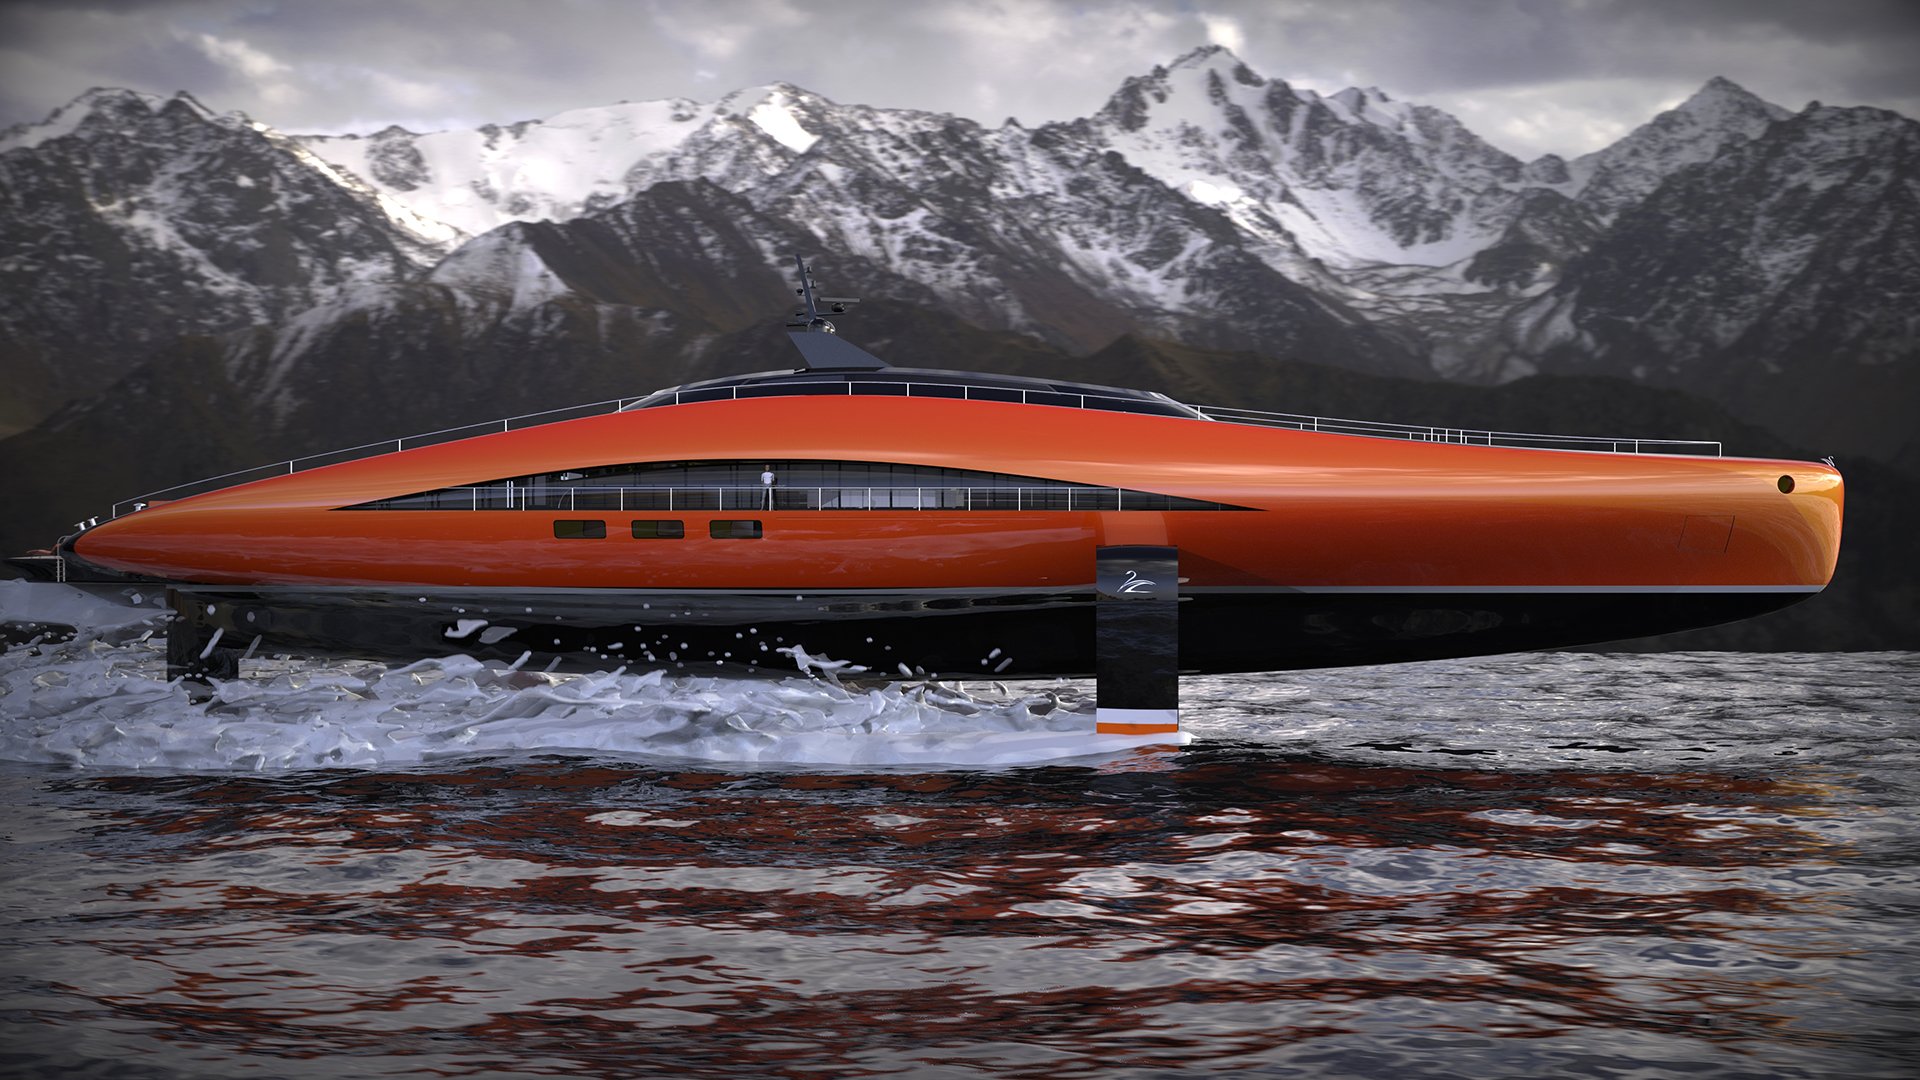 imagen 6 de Plectrum Hydrofoil Yacht, el diseño de Lazzarini que tiene todo lo que puedas soñar en un yate de lujo.